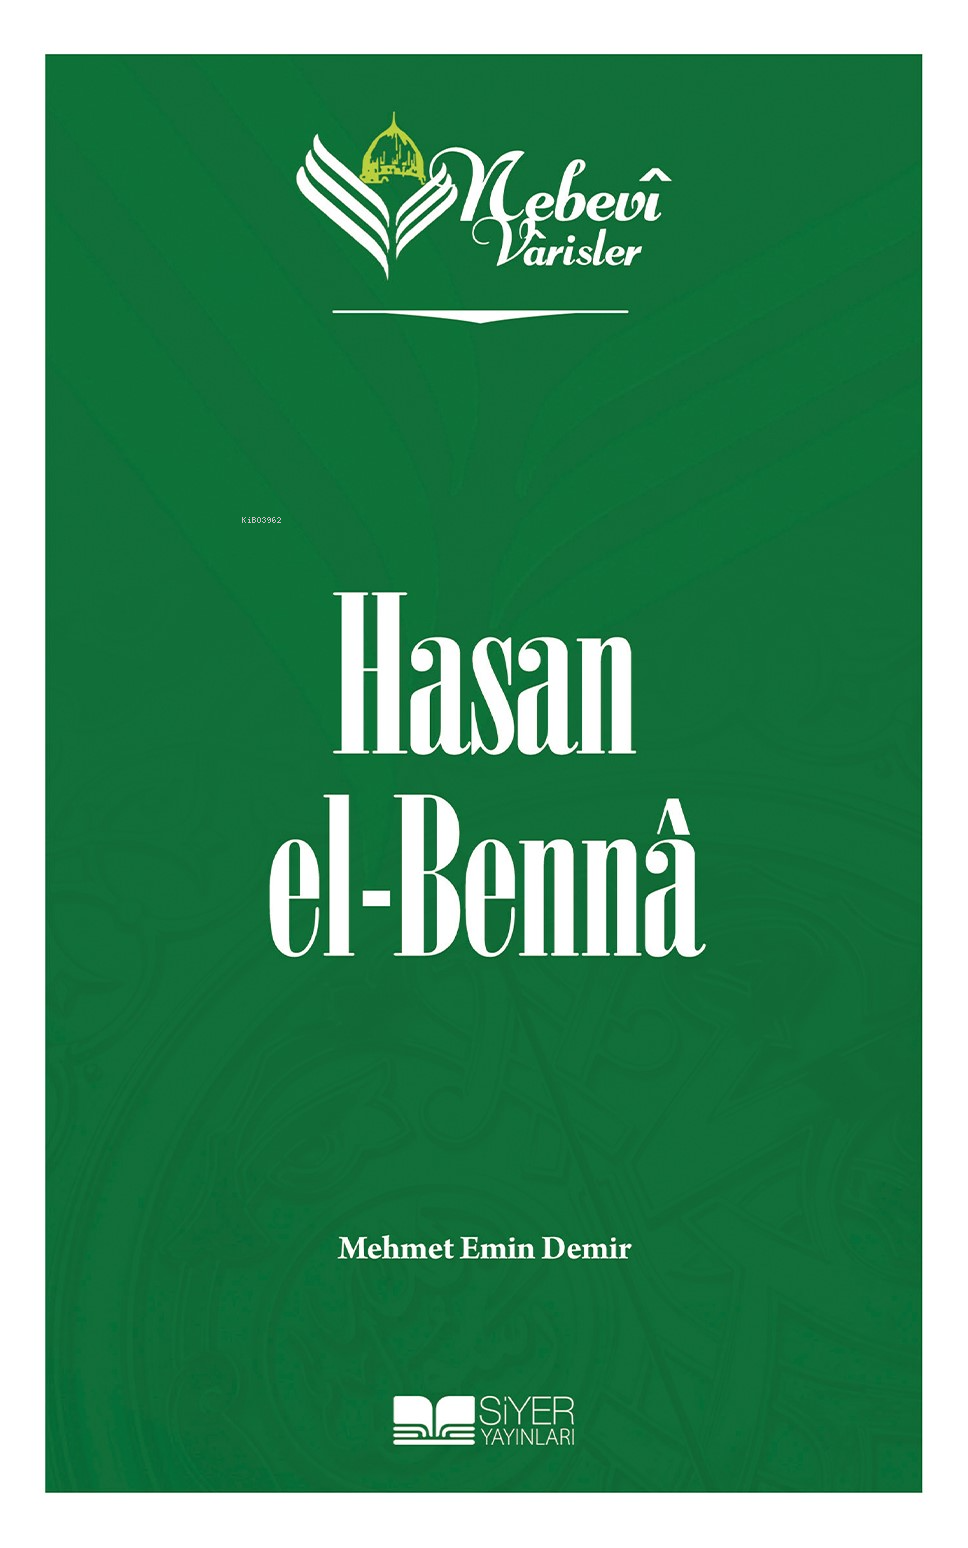 Nebevi Varisler 89 Hasan el-Benna